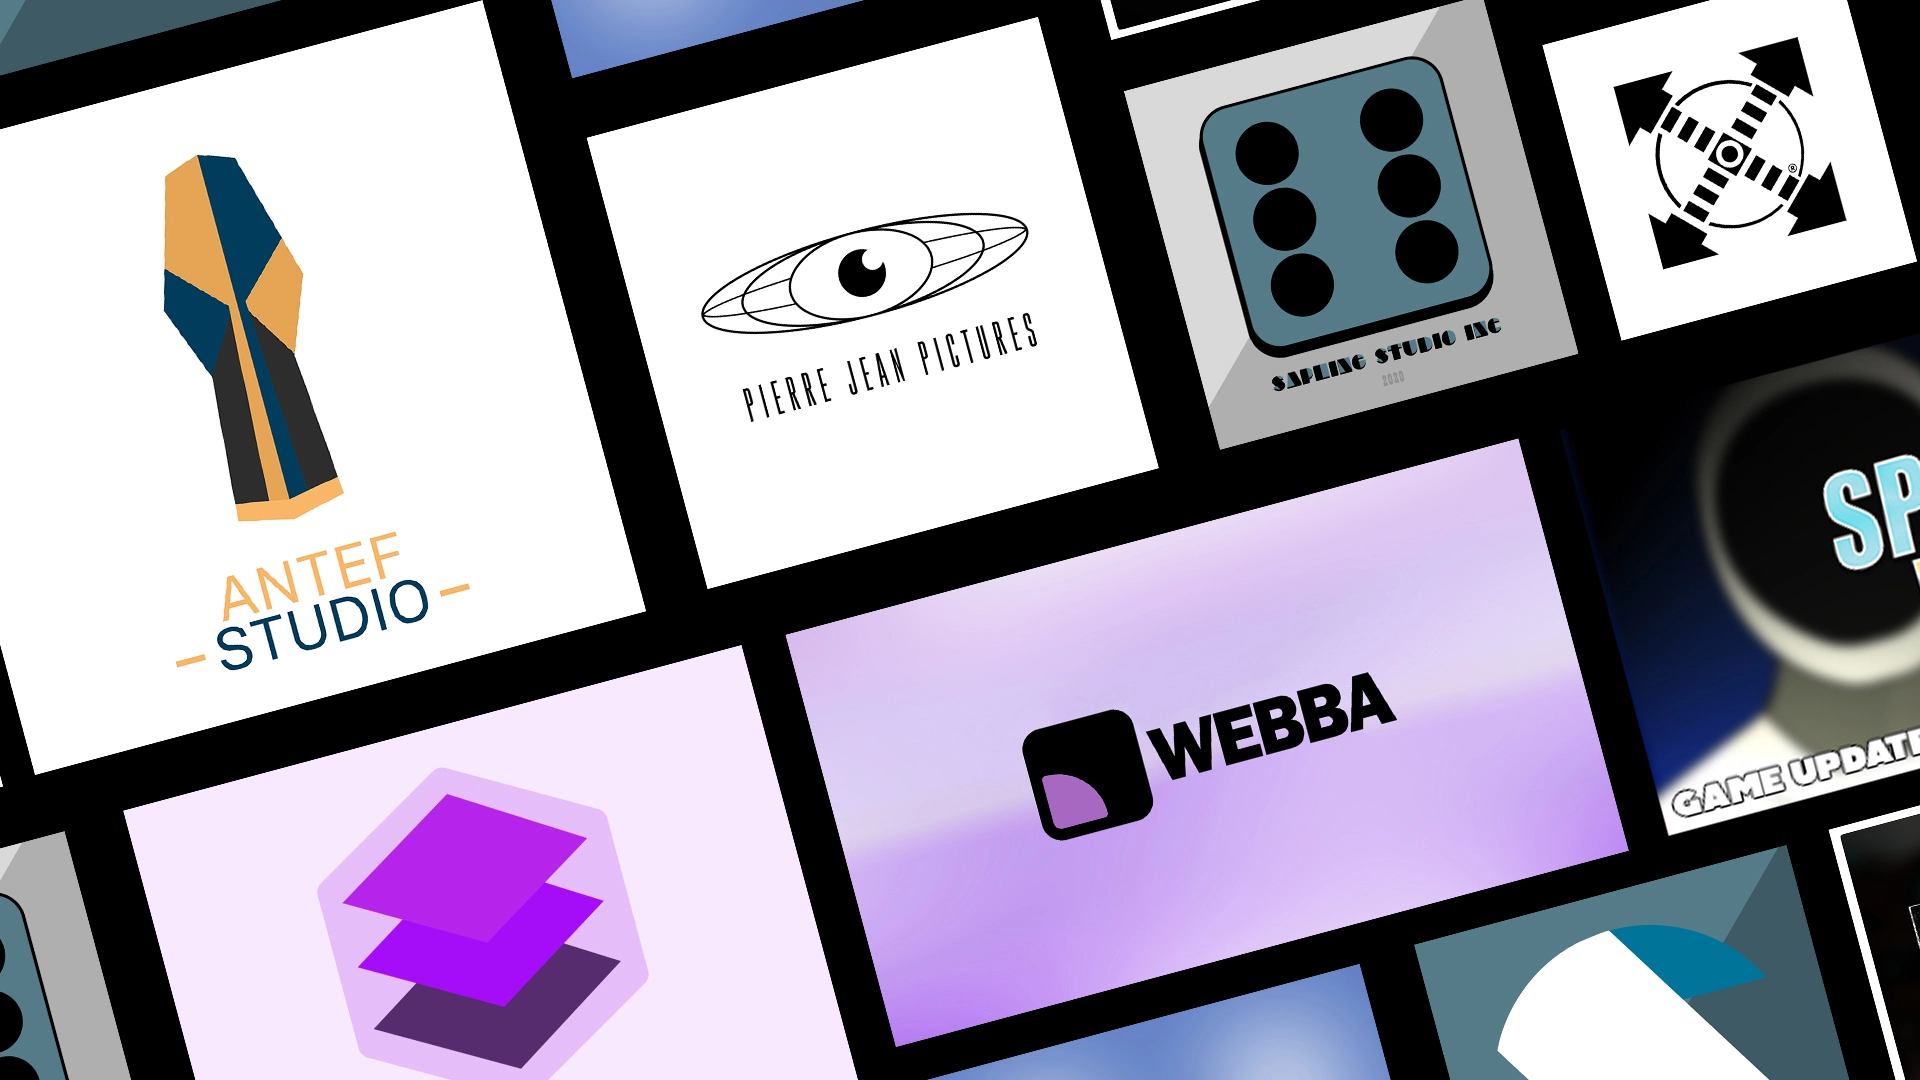 Image de démonstration des compétences de Webba en matière de création d'identité visuelles